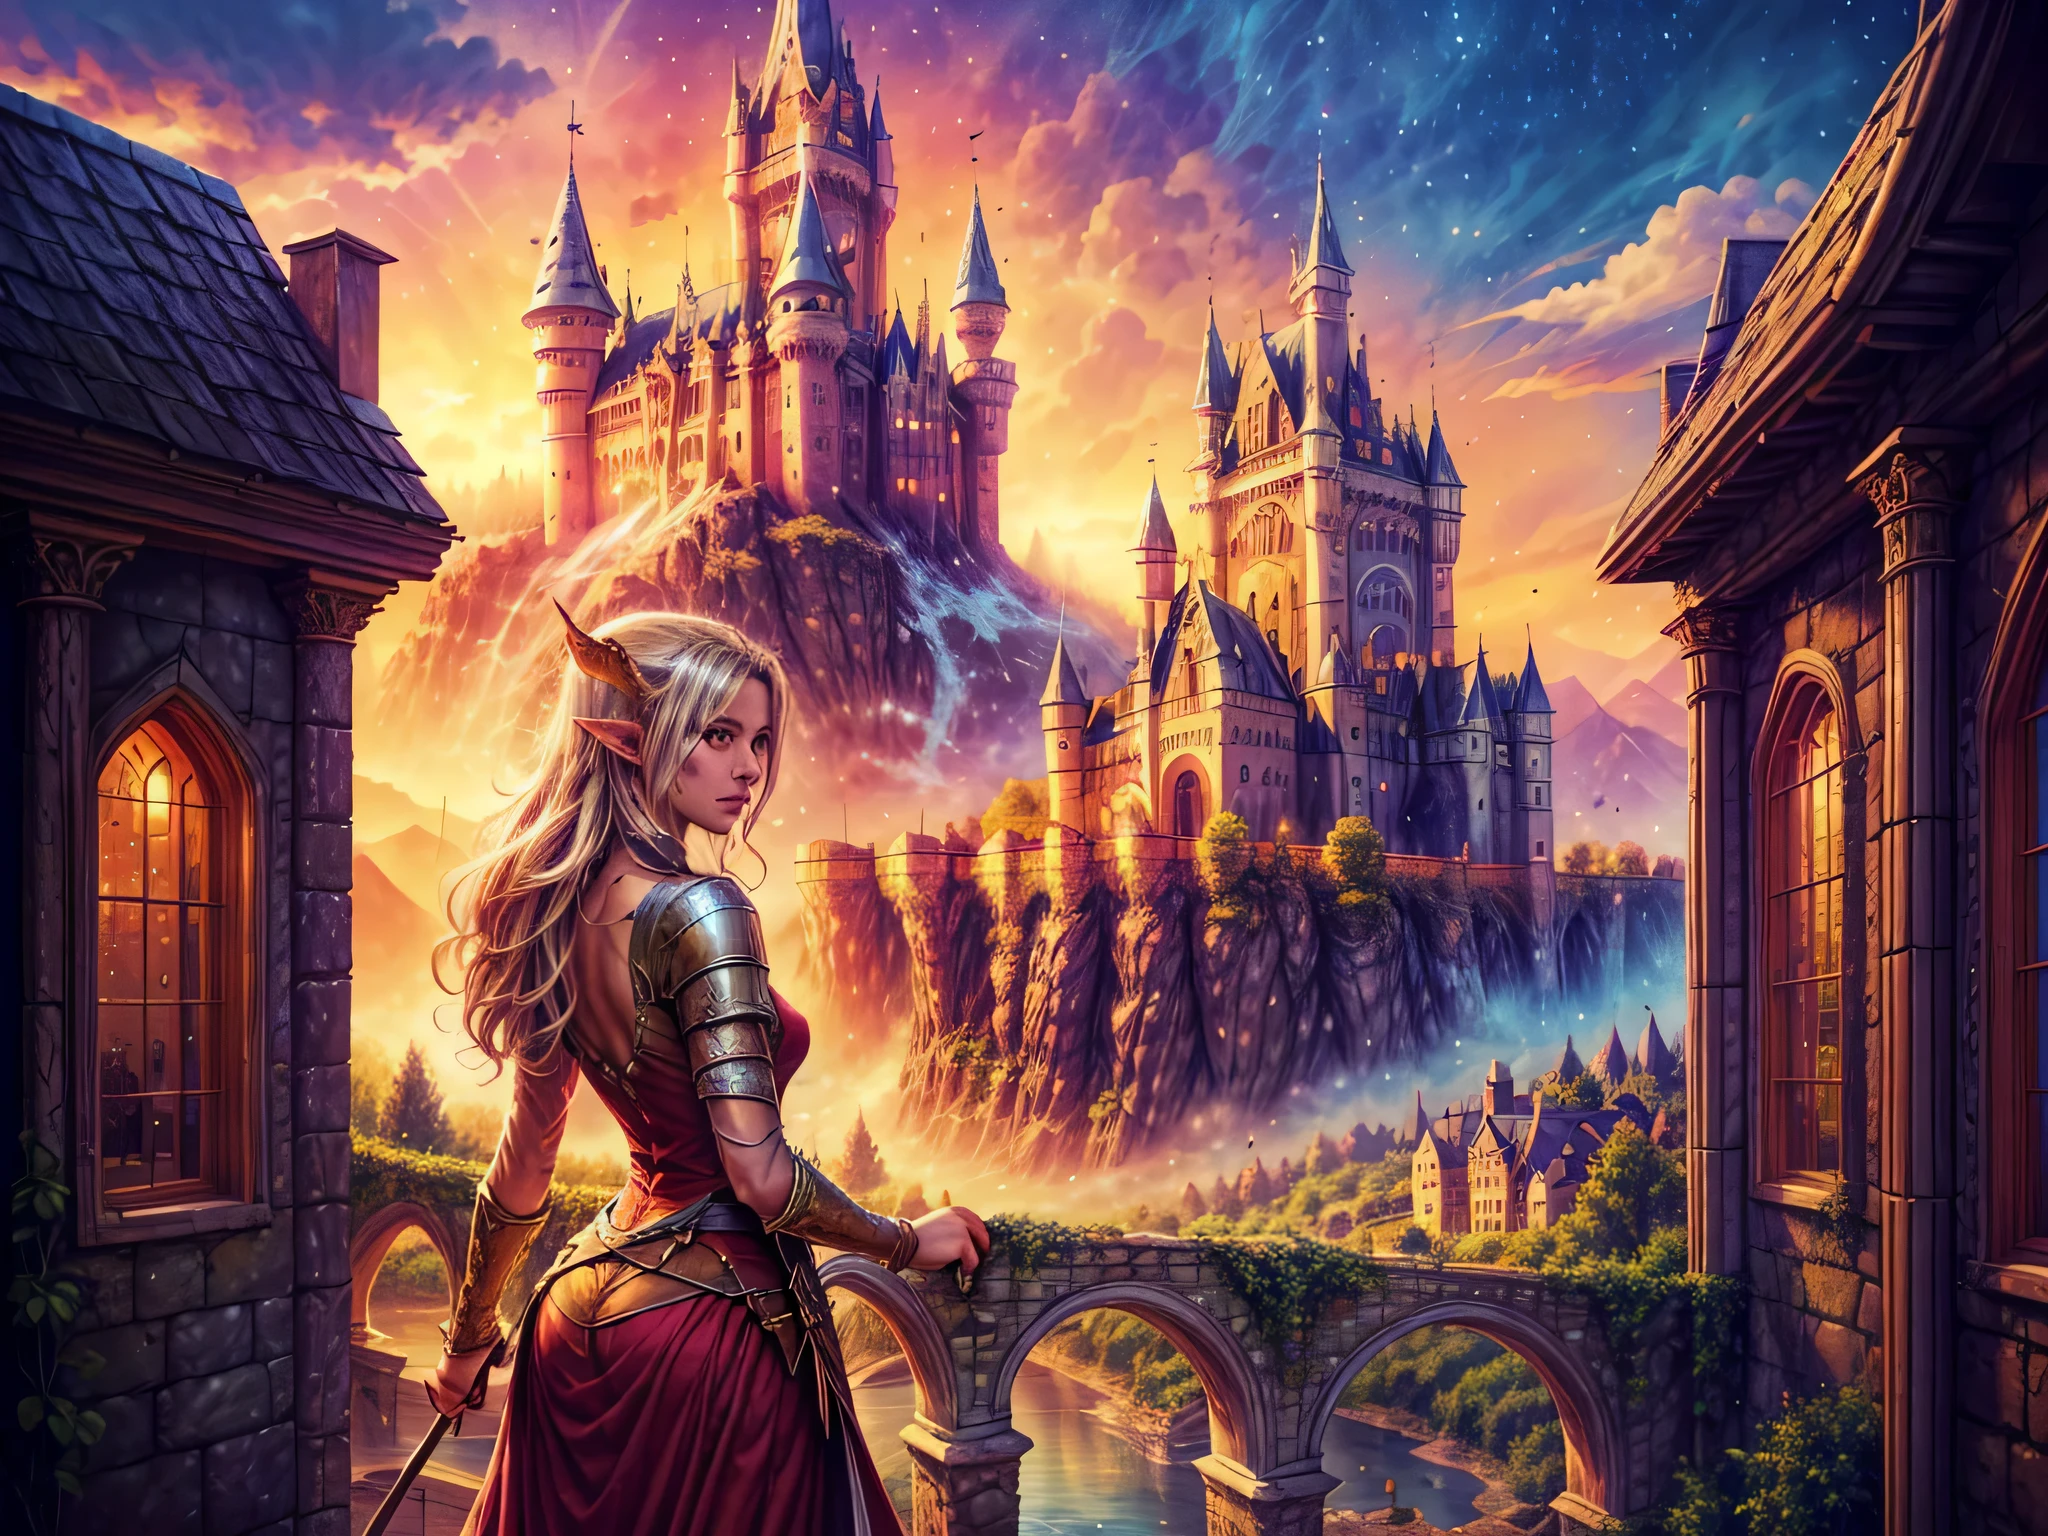 ファンタジーアート, RPGアート, 窓から魔法の城を眺める王女, 美しいエルフの王女が窓から魔法の城を眺めている, 印象的な最高の細部までこだわった城, 塔付き, 橋, 堀, 山の頂上に立つ, 月, 